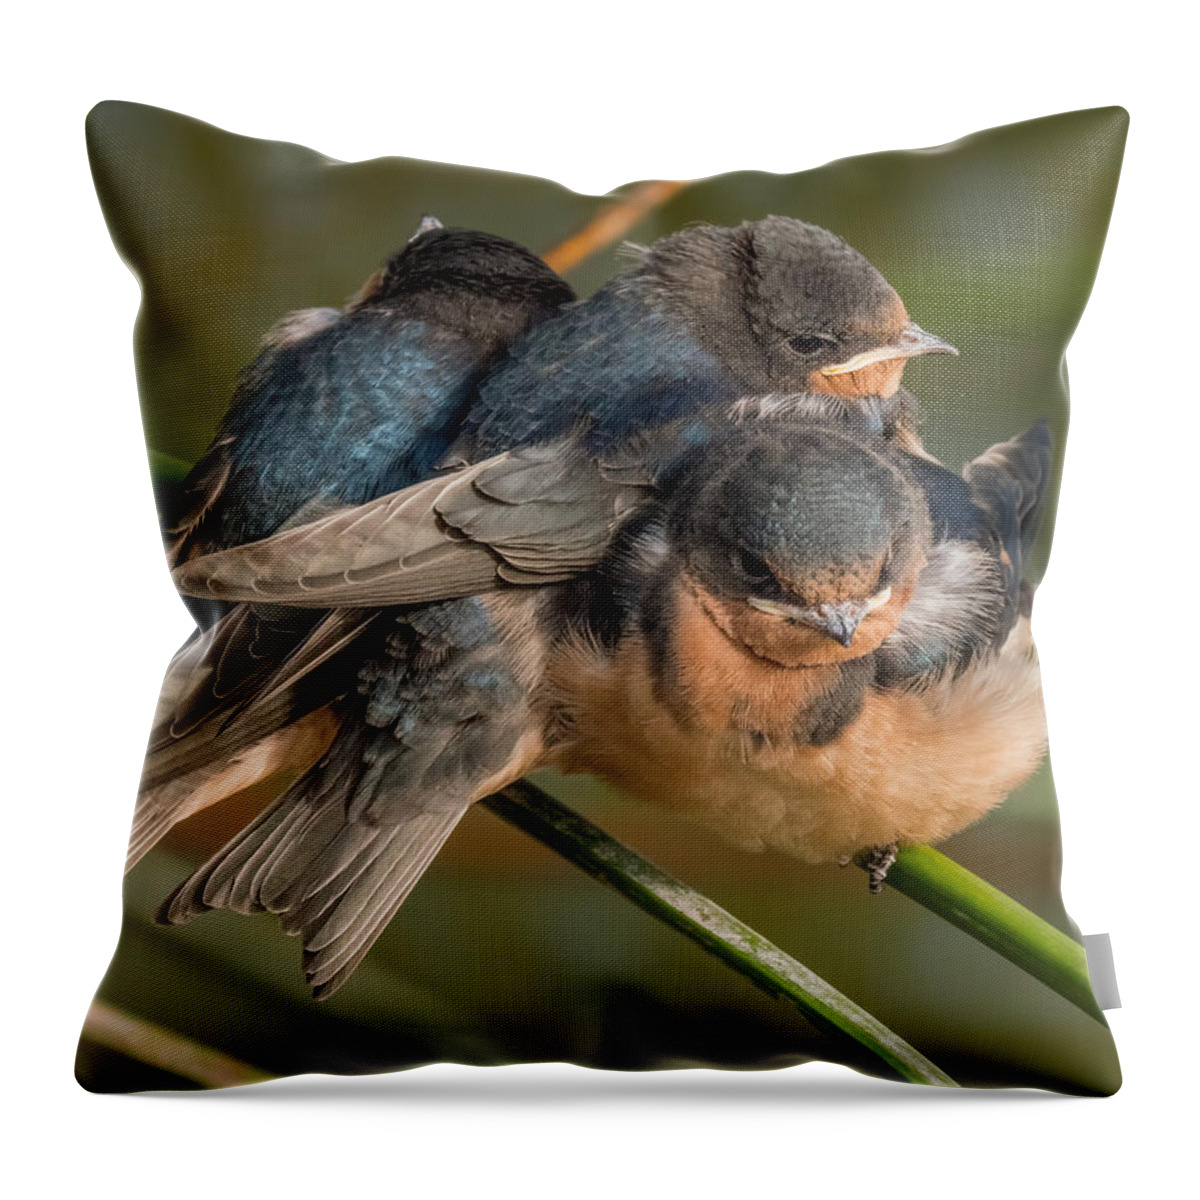 Birds Throw Pillow featuring the photograph Birds of a Feather by Derek Dean